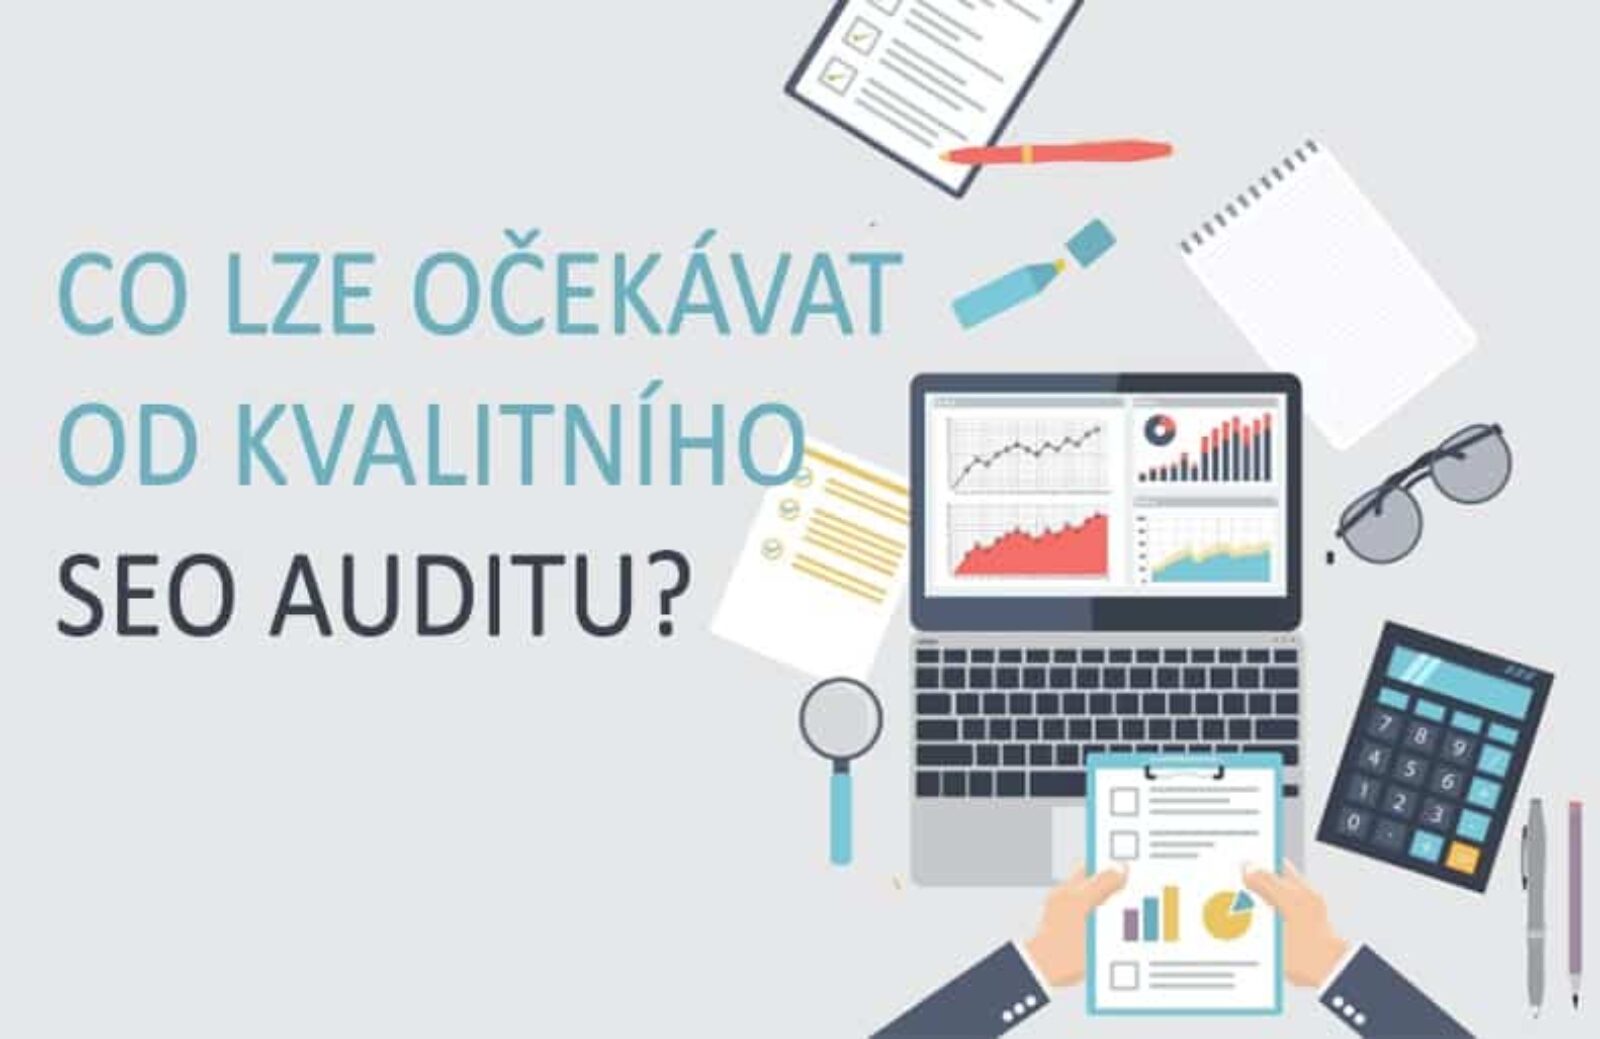 Co očekávat od kvalitního SEO auditu?